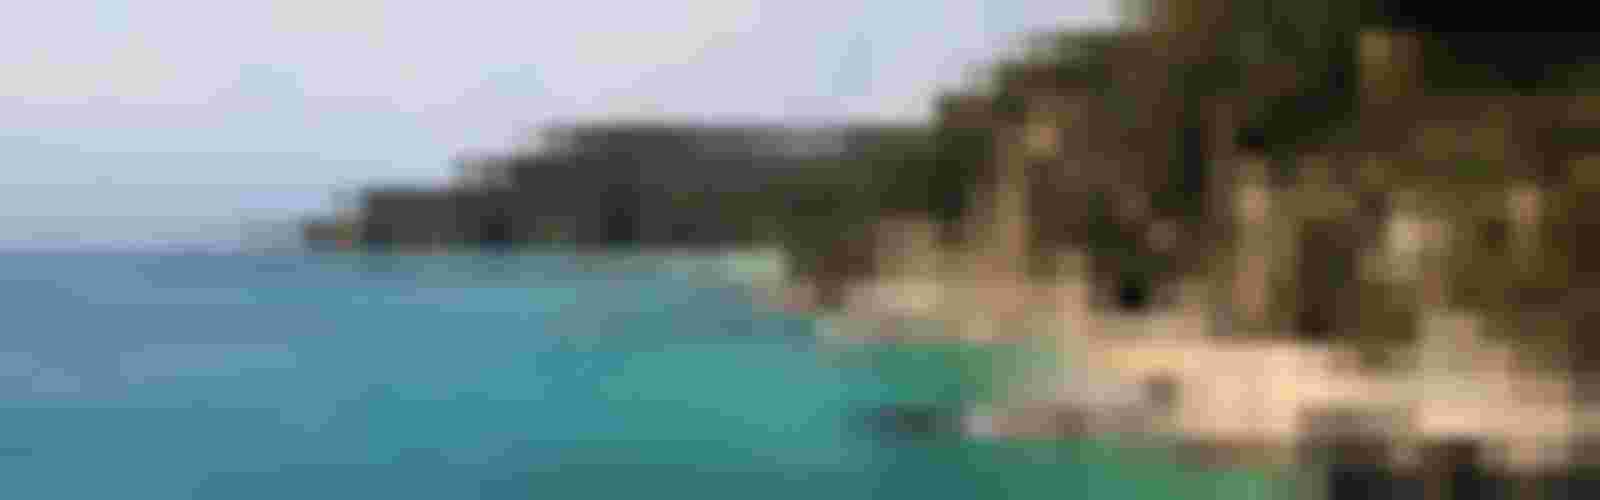 Location de villa en Espagne : villa avec piscine ou en bord de mer pour vos vacances pas chères